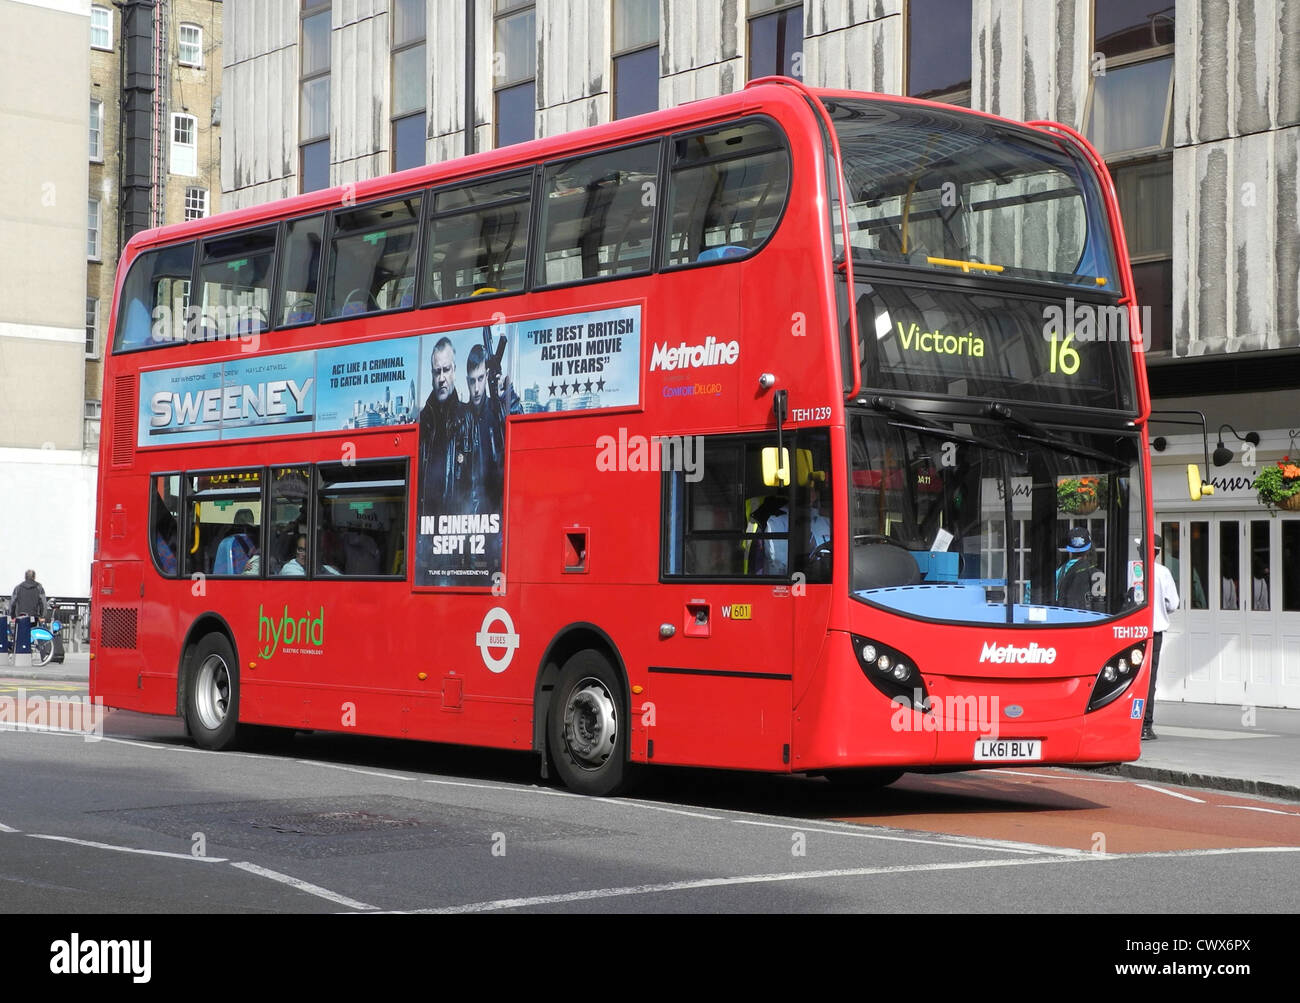 Un double decker bus Londres rouge alimenté par la technologie hybride électrique Banque D'Images